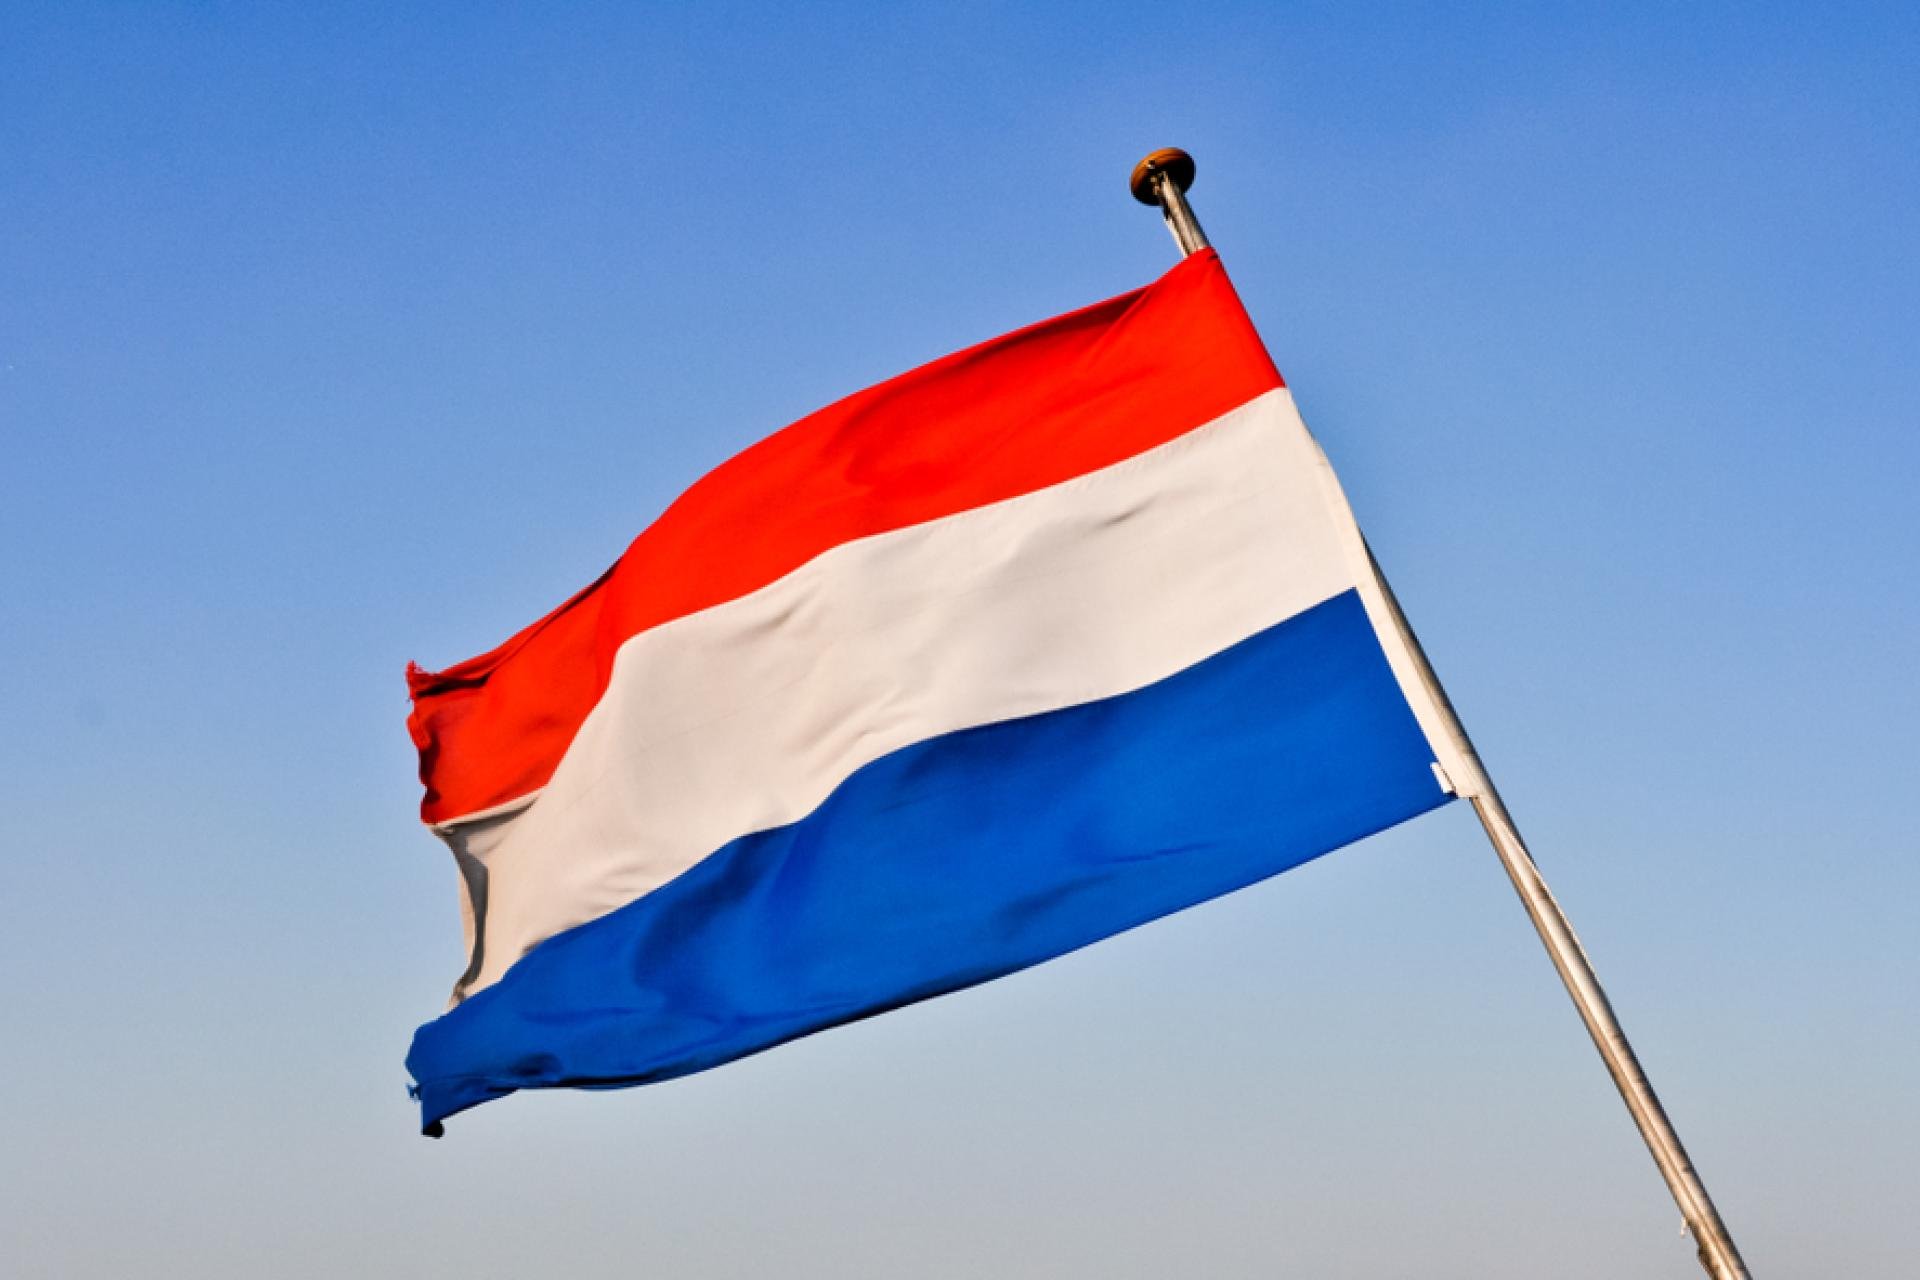 De Nederlandse vlag met op de achtergrond een blauwe lucht